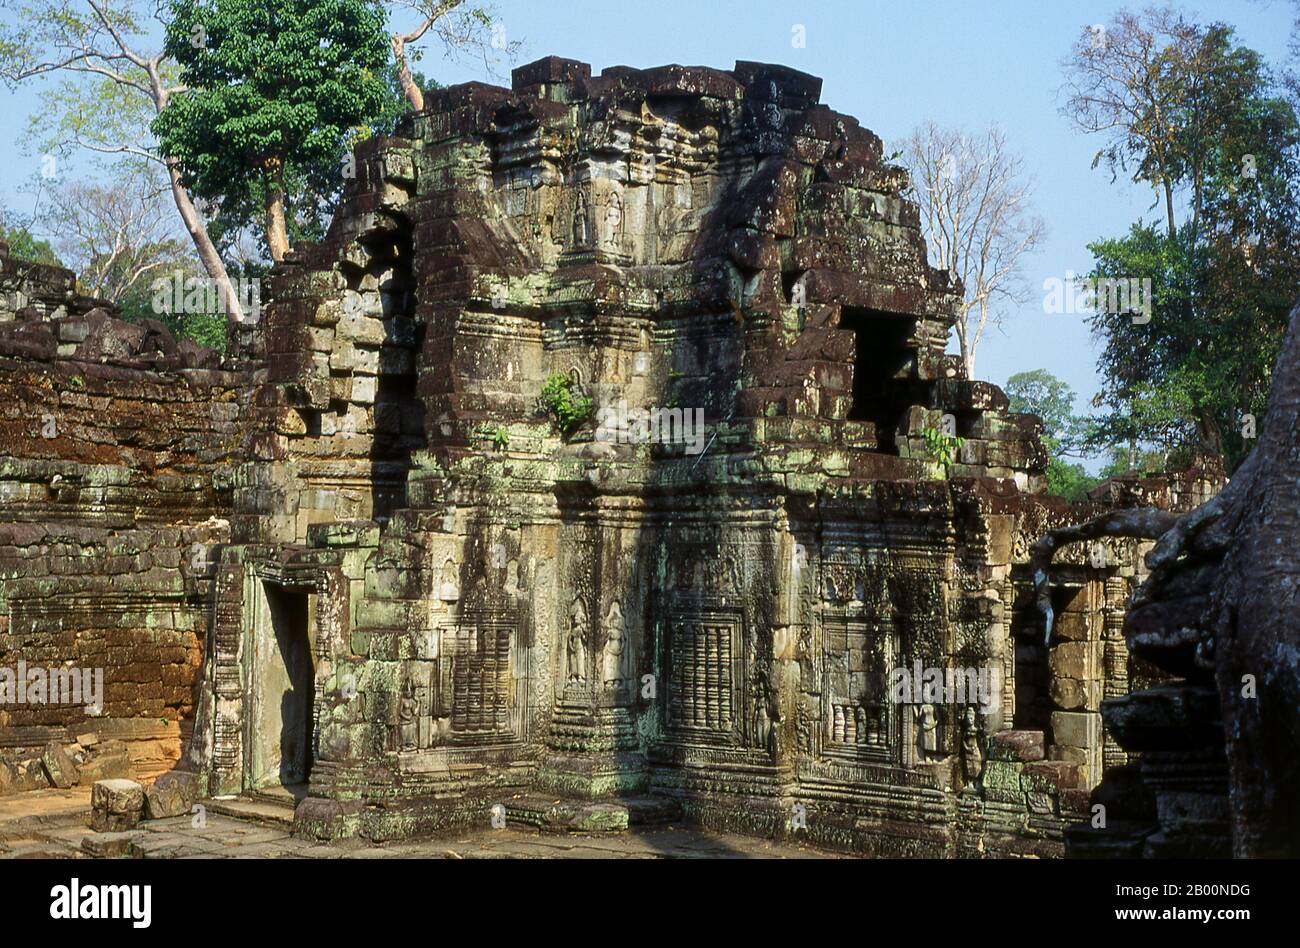 Cambodge: Preah Khan, Angkor. Preah Khan (temple de l'épée sacrée) a été construit à la fin du XIIe siècle (1191) par Jayavarman VII et est situé juste au nord d'Angkor Thom. Le temple a été construit sur le site de la victoire de Jayavarman VII sur les Chams envahisseurs en 1191. Elle était le centre d'une organisation importante, avec près de 100,000 fonctionnaires et fonctionnaires. Il a servi comme une université bouddhiste à un moment donné. La déité primaire du temple est la boddhisatva Avalokiteshvara sous la forme du père de Jayavarman. Banque D'Images